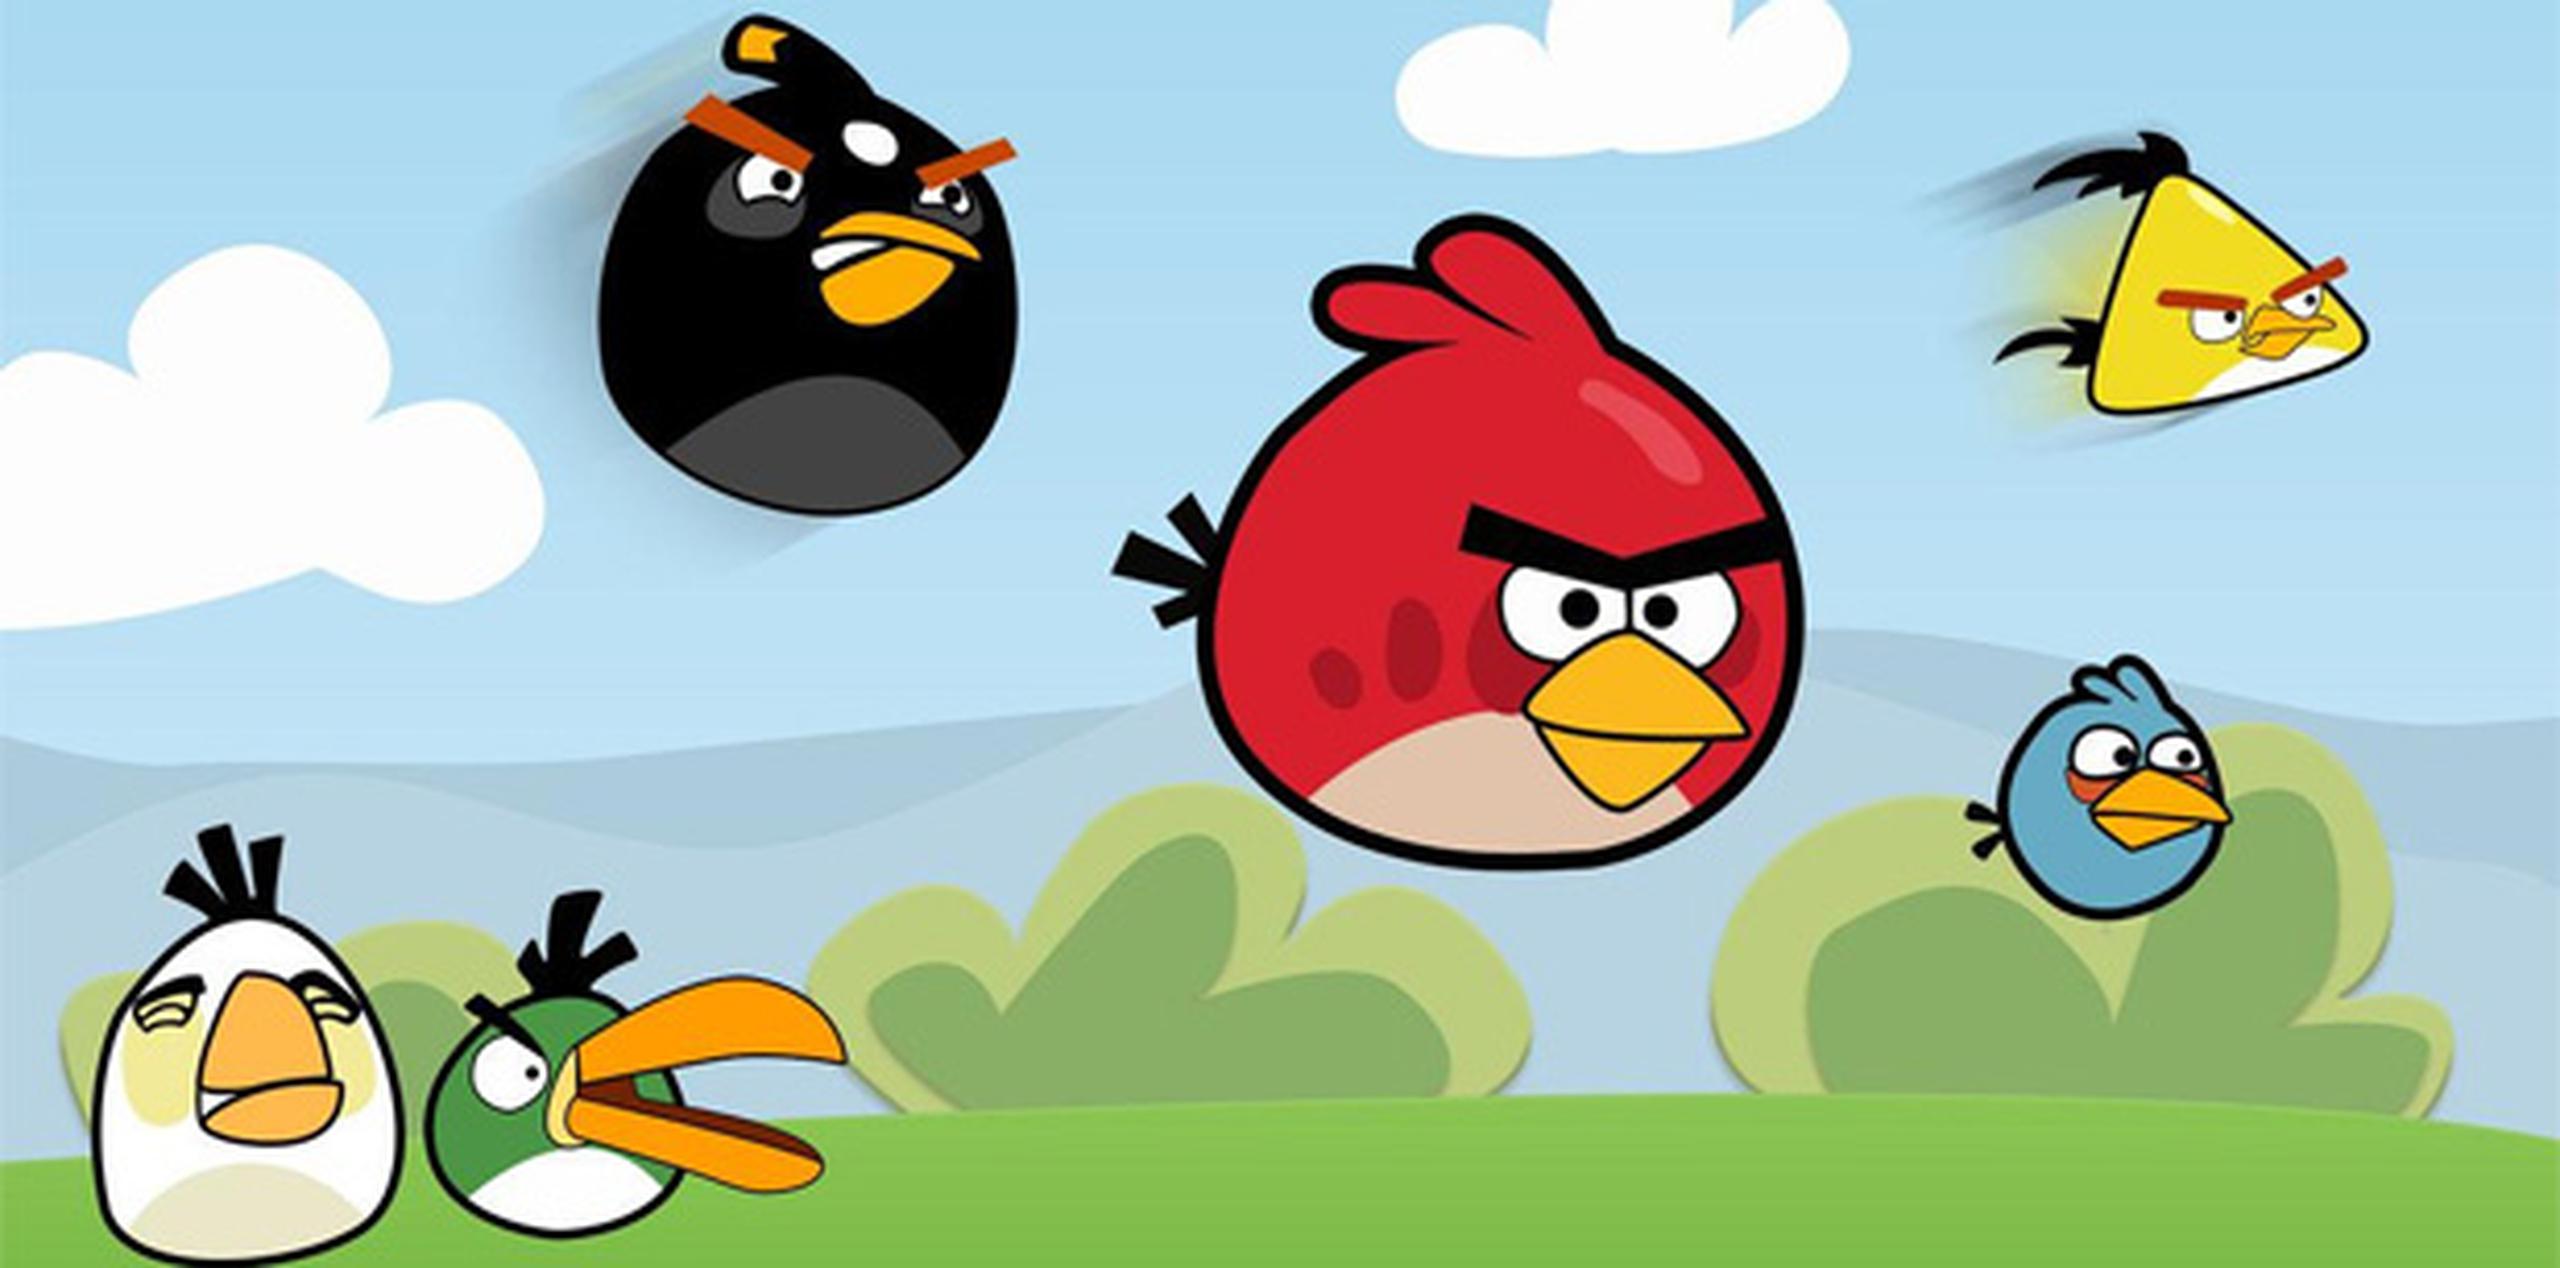 Desde el lanzamiento de su primera versión en 2009, el juego "Angry Birds" ha sido descargado más de 2,000 millones de veces.